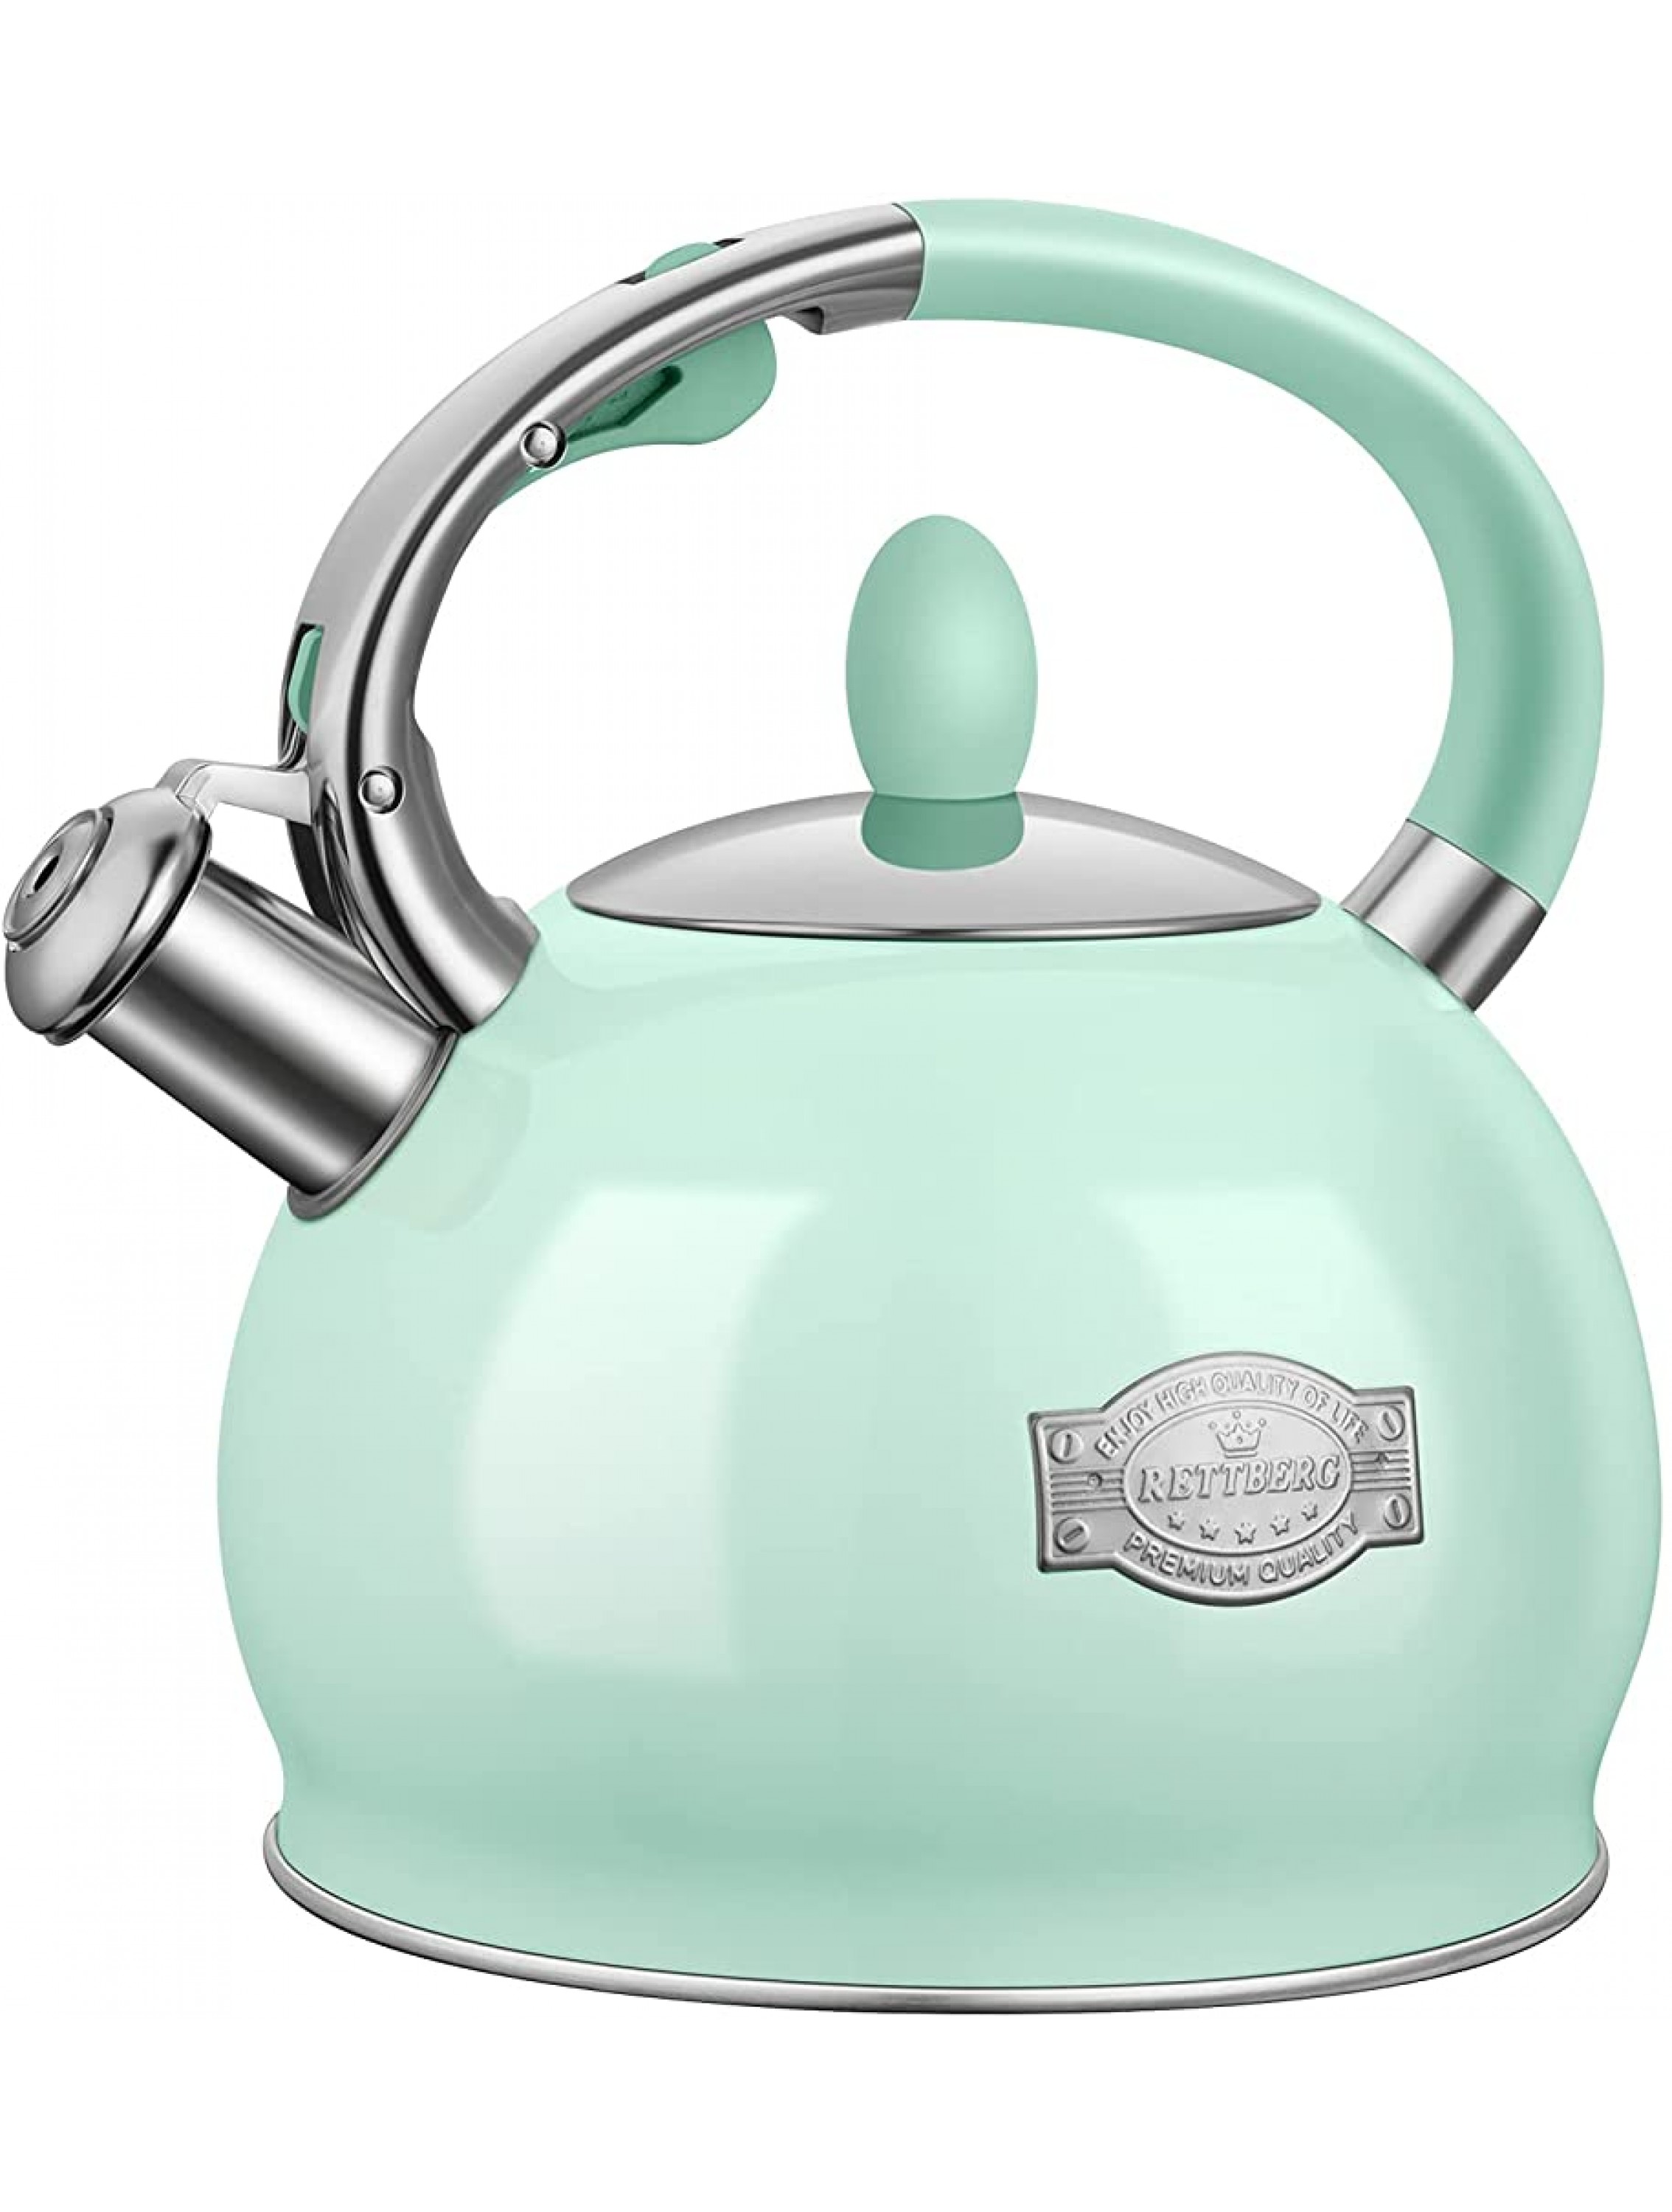 RETTBERG Tea Kettle for Stovetop Whistling Tea Kettles Modern Green Stainless Steel Teapots 2.64 Quart Mint Green - BNPYYYCGG